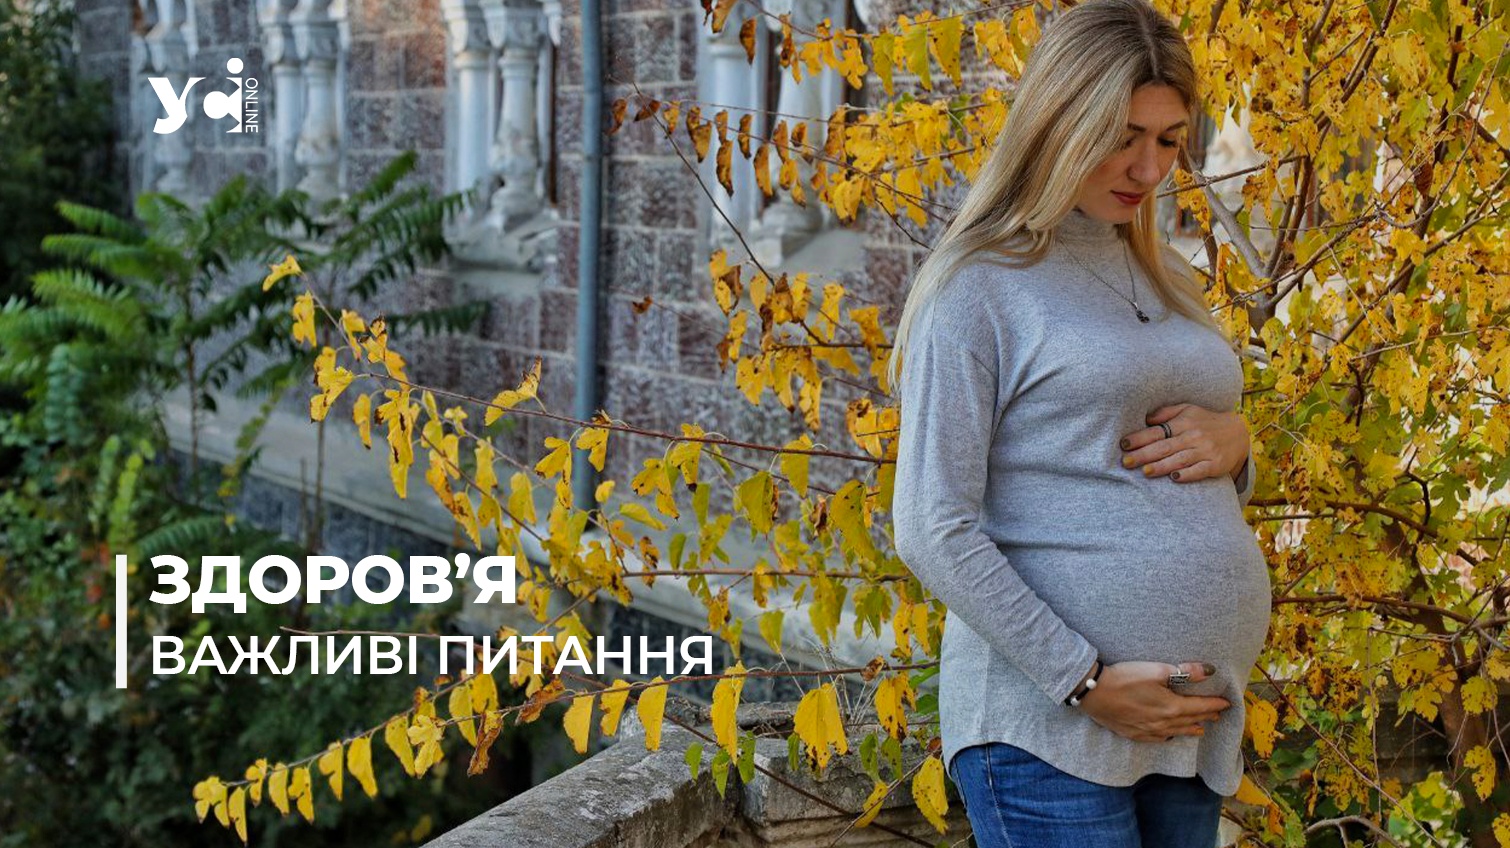 Вакцинація вагітних: 11 запитань лікарю  «фото»